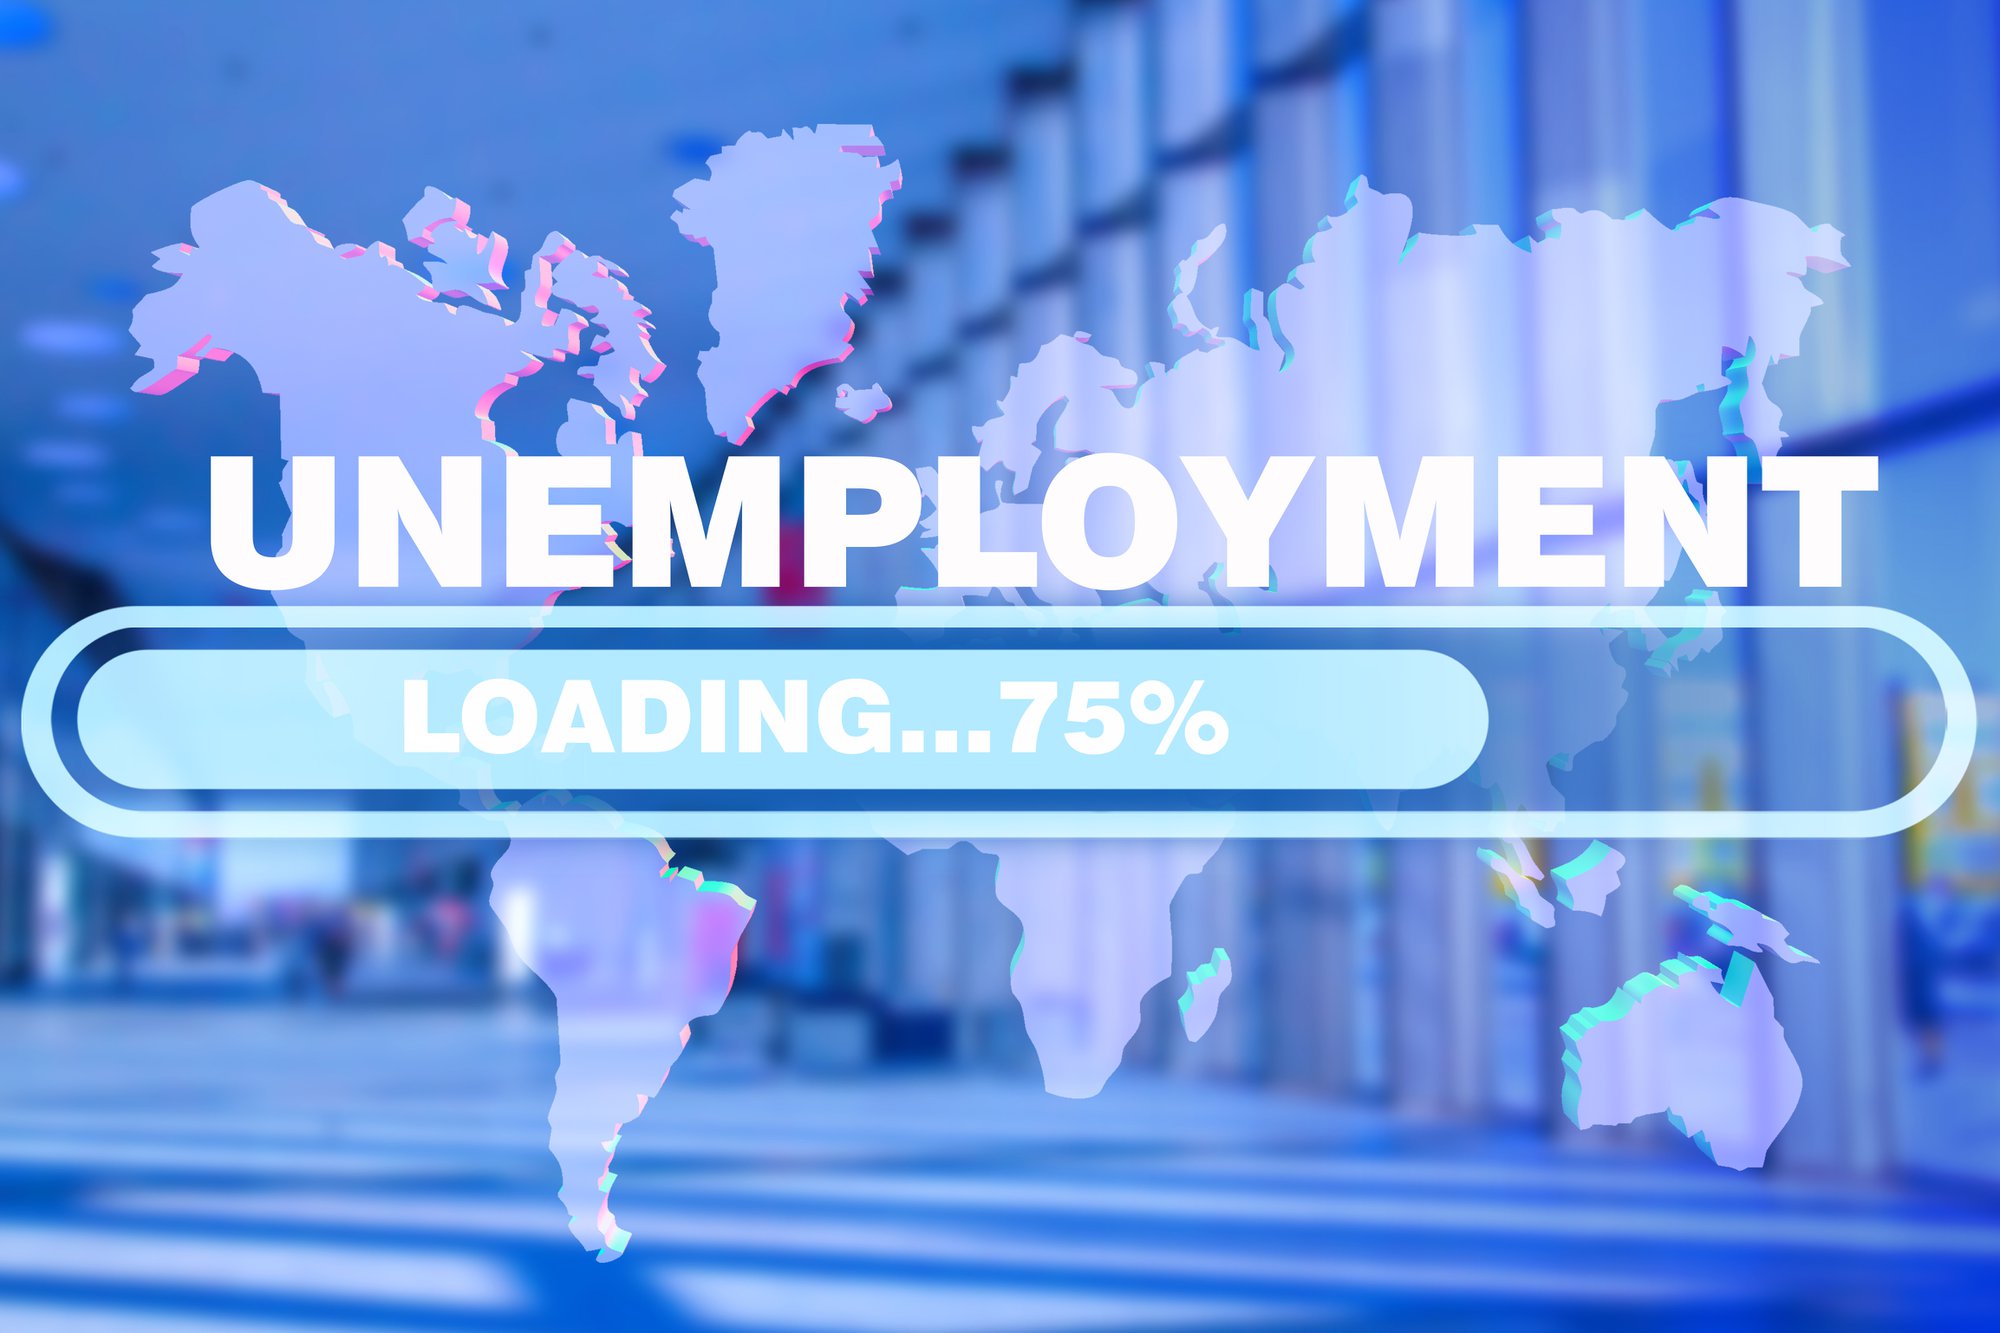 Tijdelijke werkloosheid stijgt maar niet tot niveau dieptepunt april